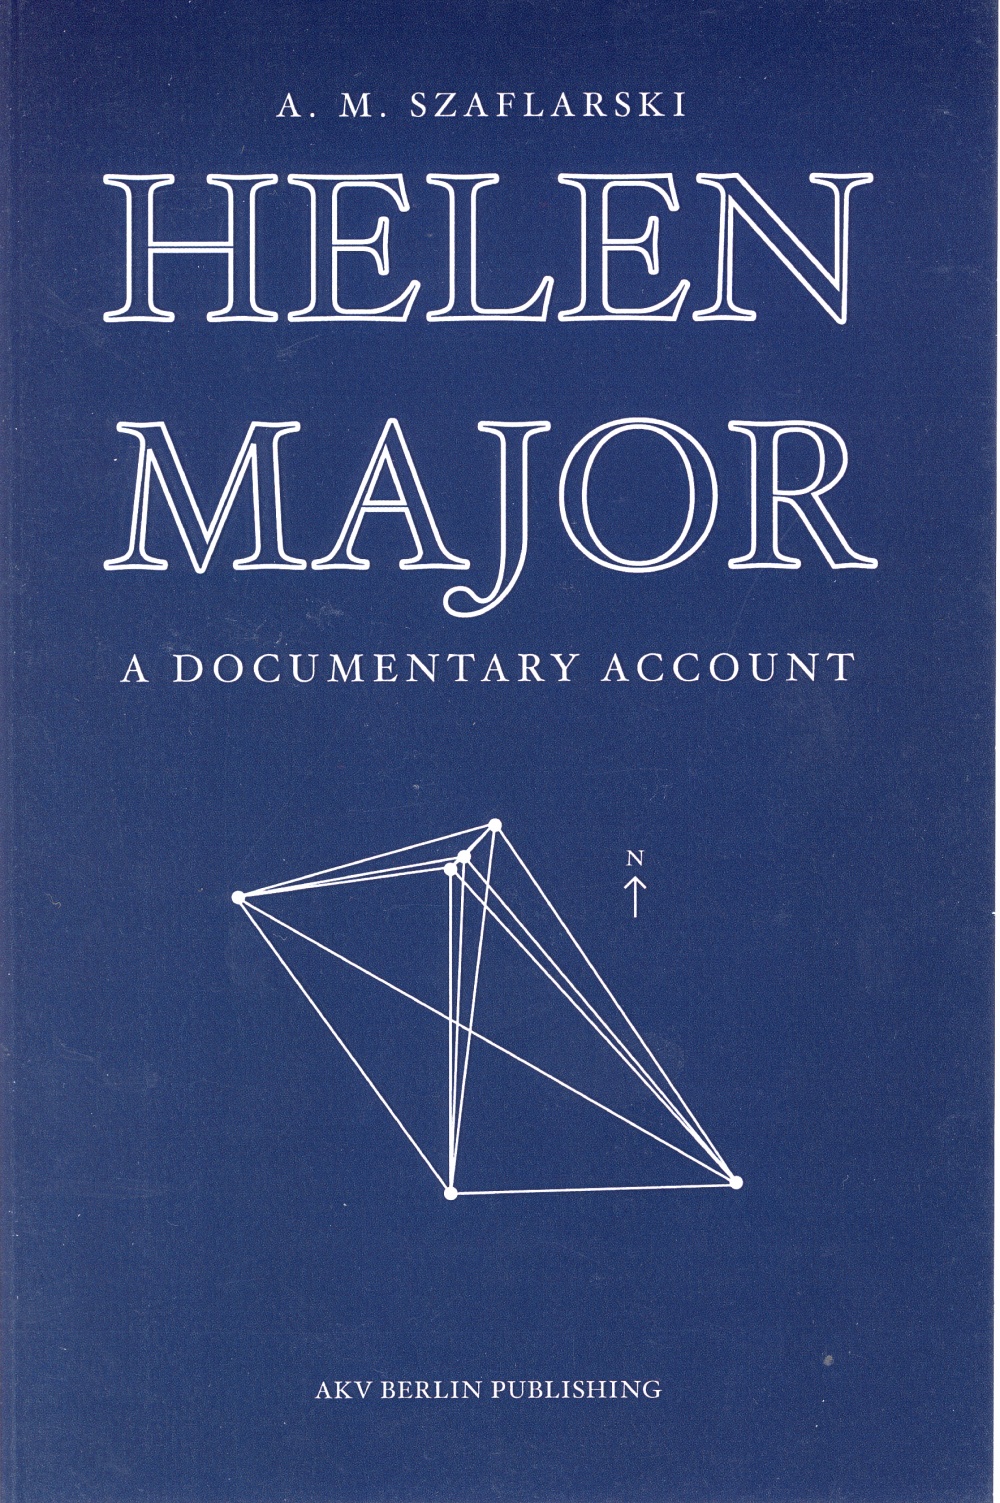 Helen Major / A Documentary Account